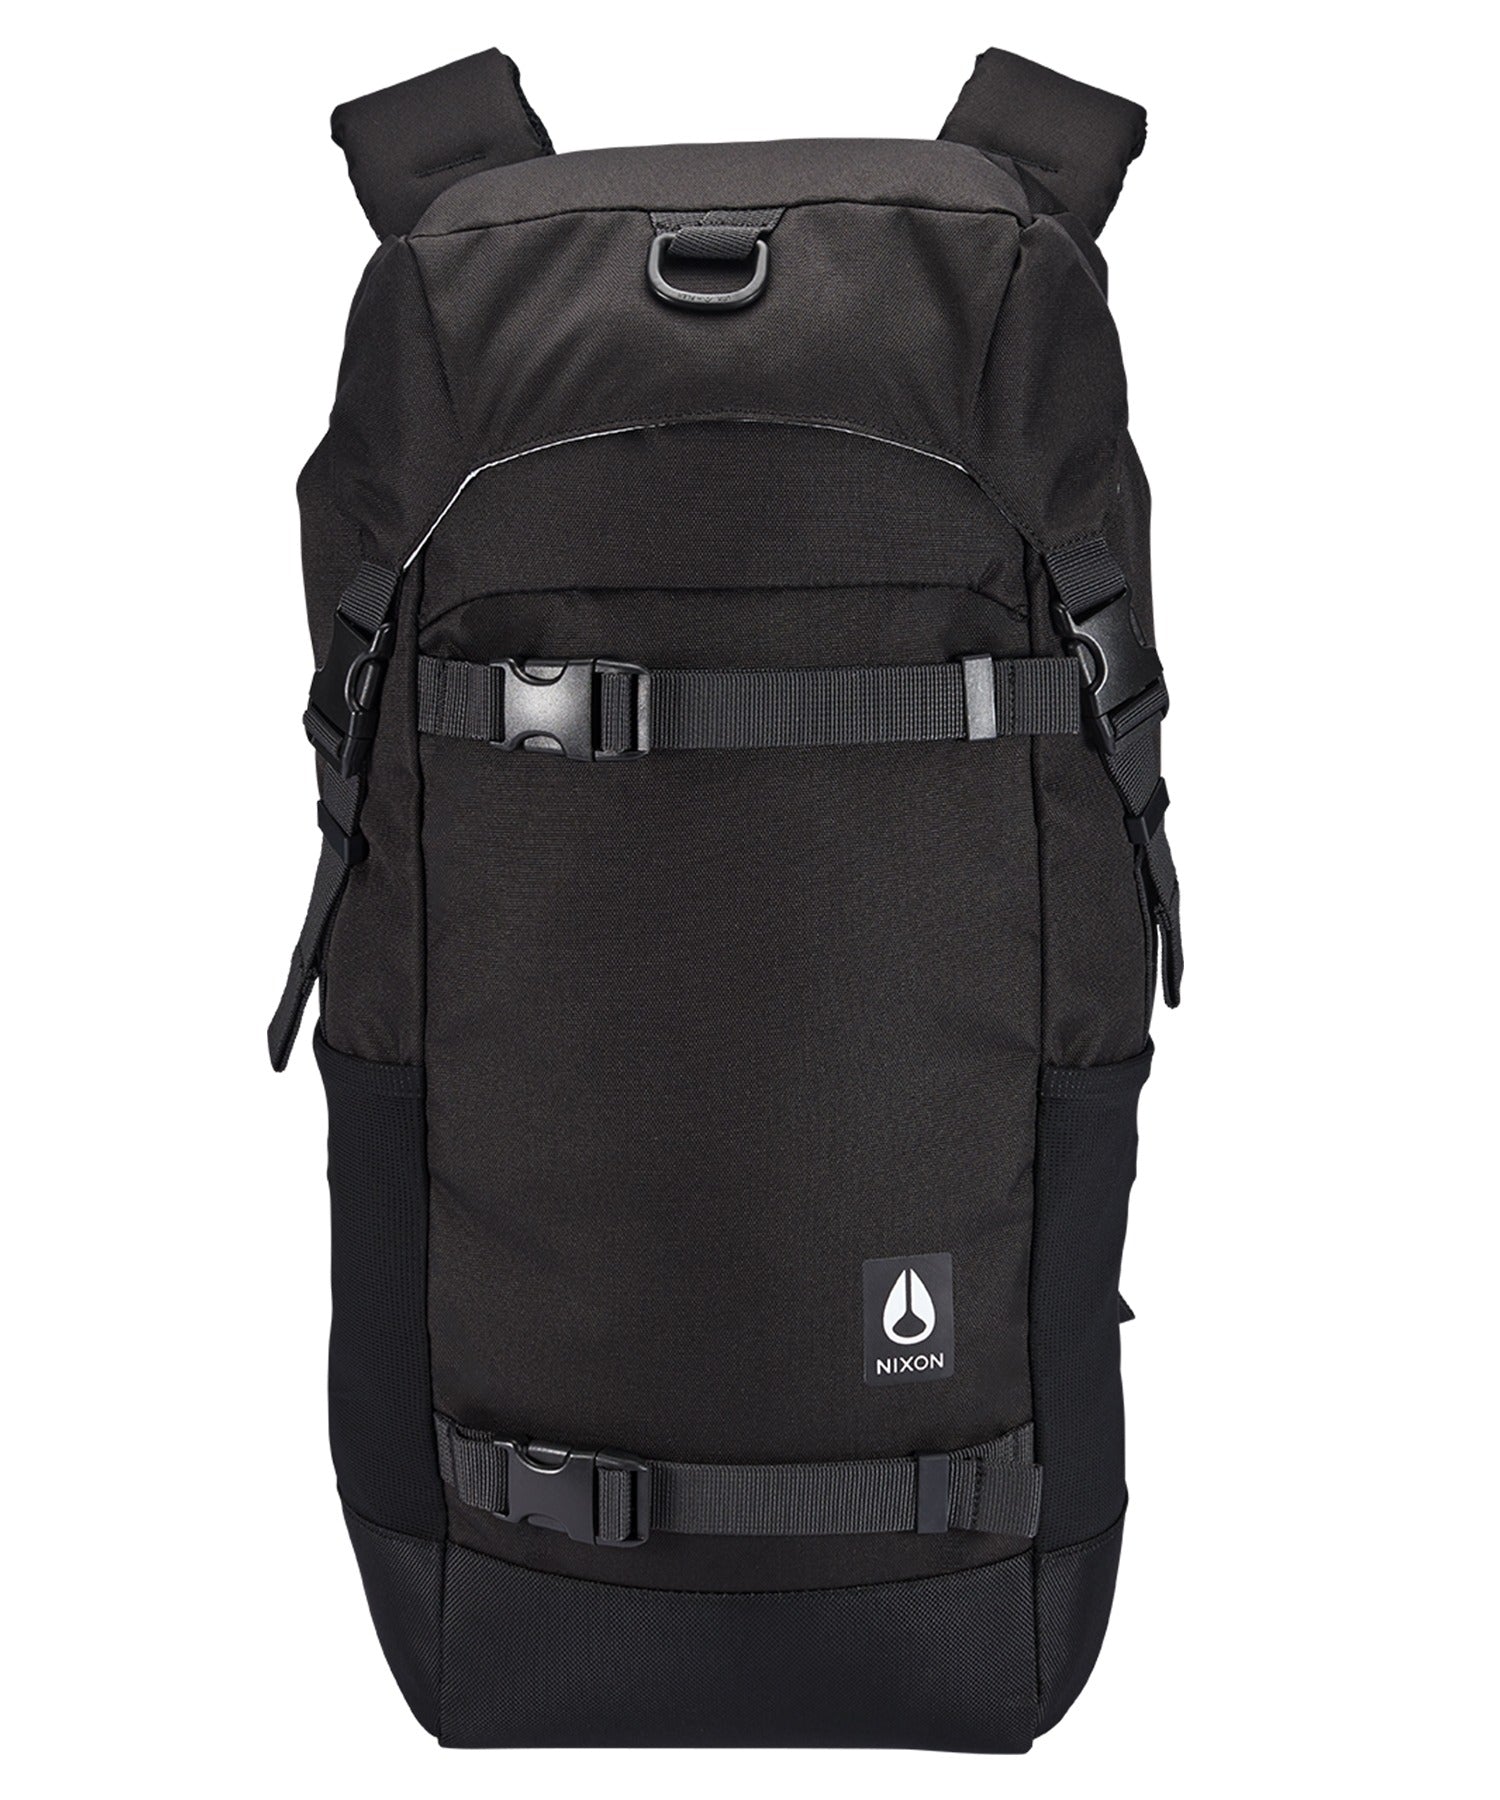 NIXON/ニクソン Landlock4 Backpack 25L